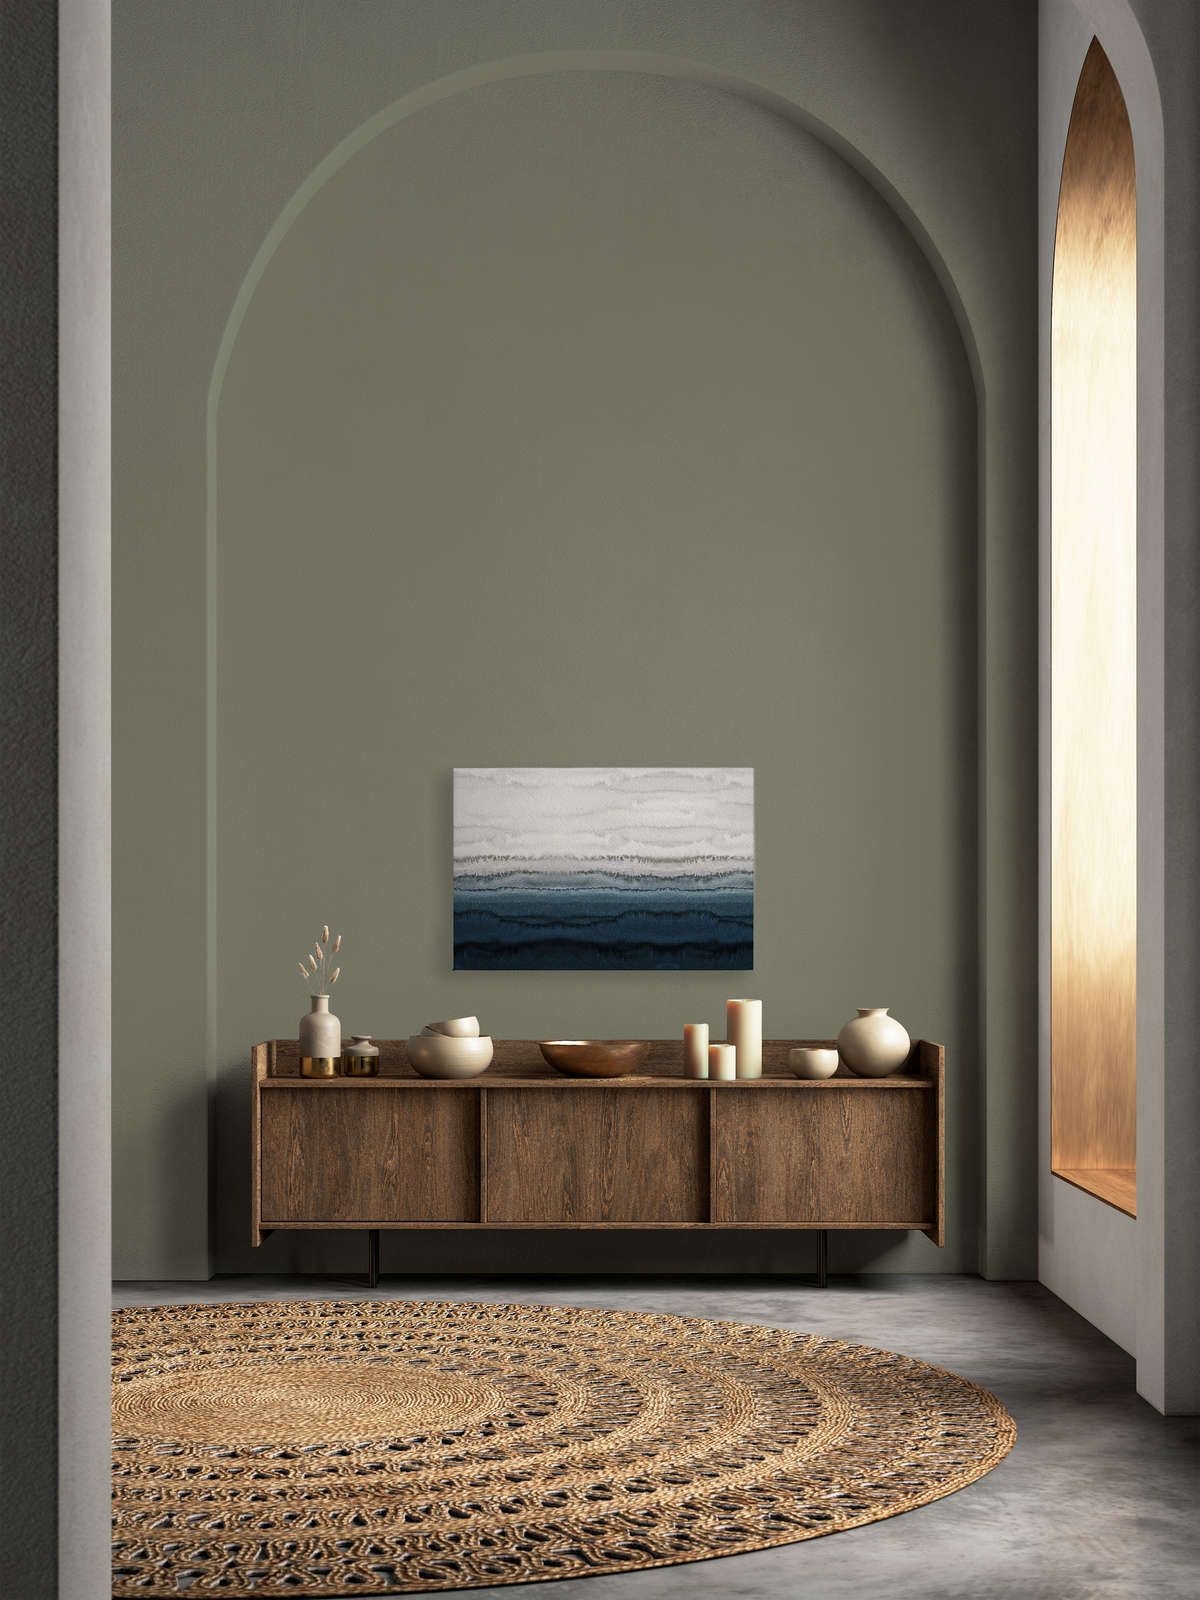             Toile Marées style aquarelle minimaliste - 0,90 m x 0,60 m
        